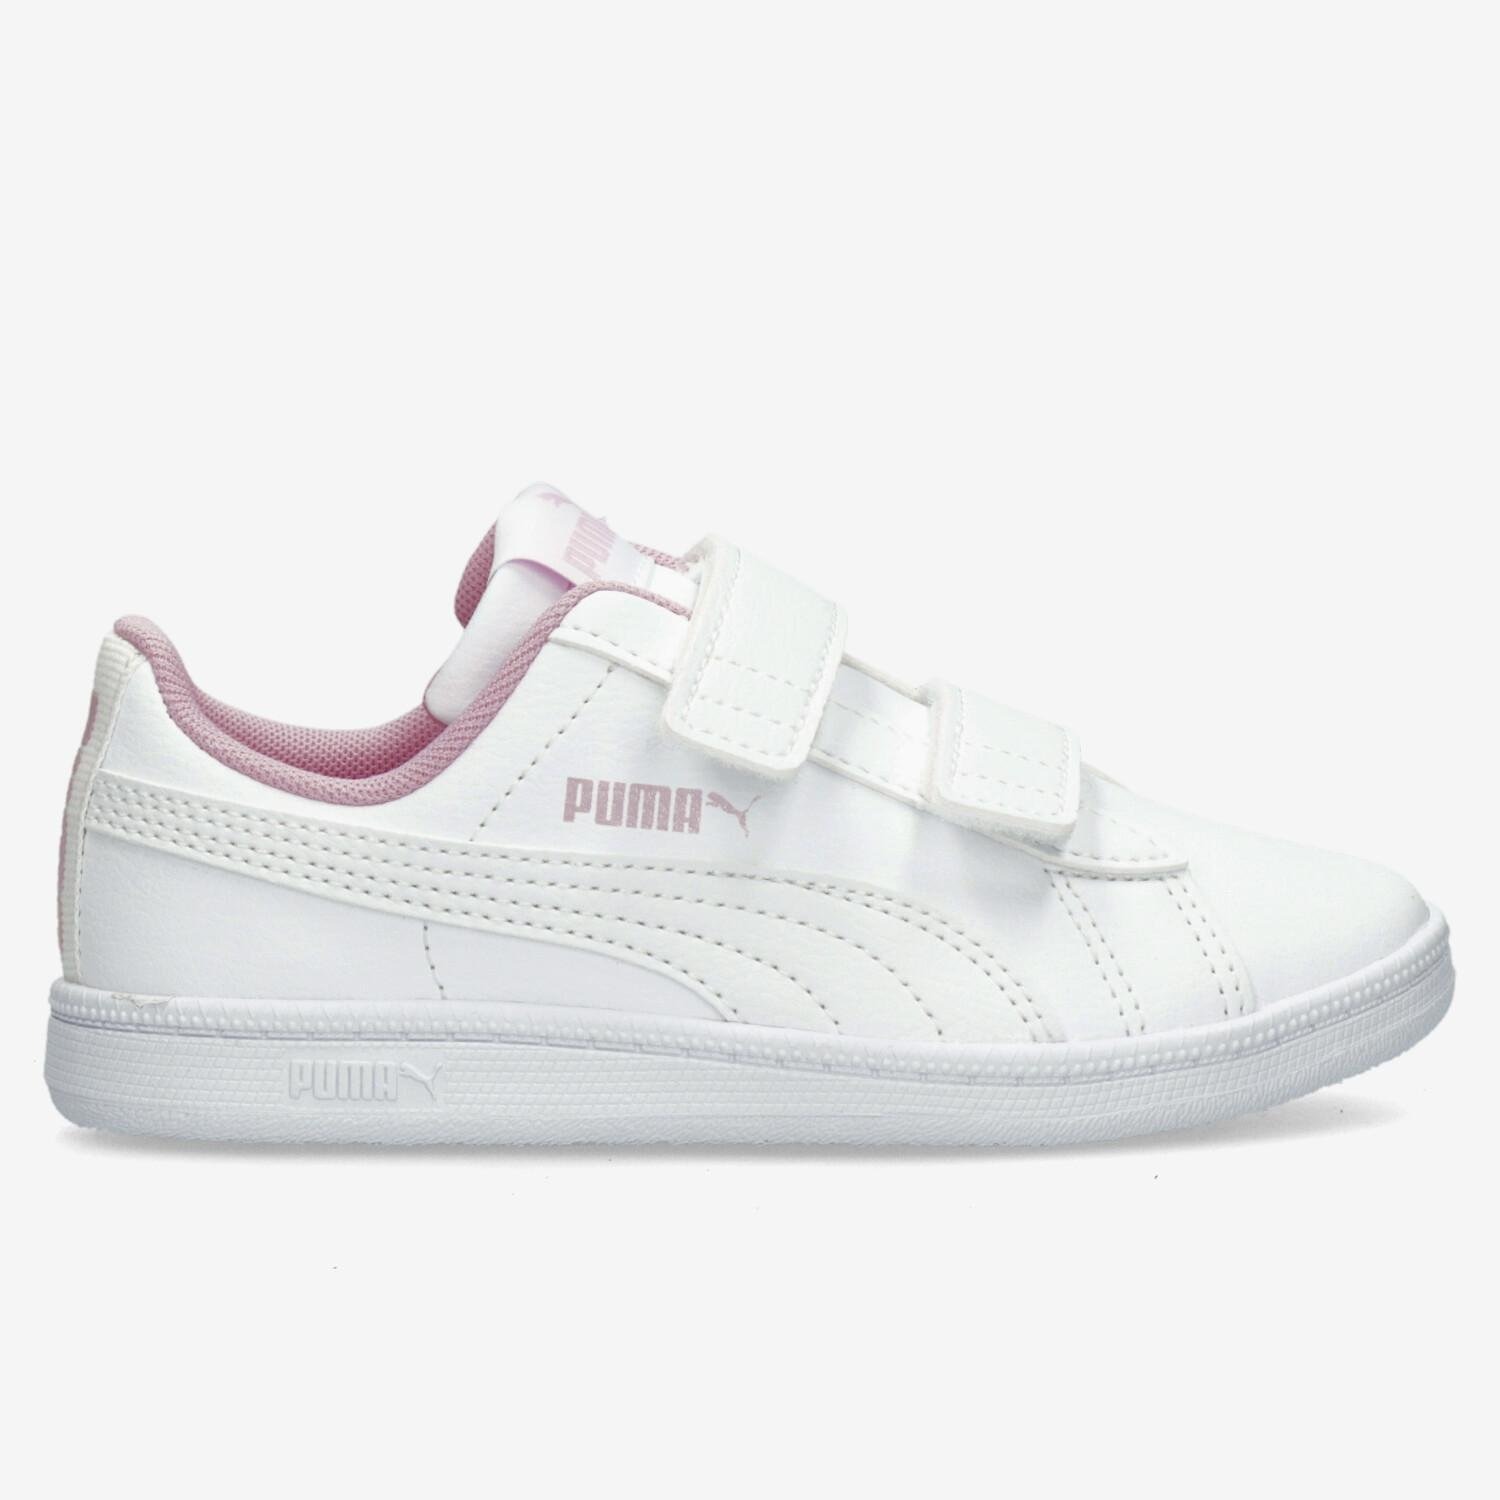 Puma Puma up v sneakers wit/roze kinderen kinderen